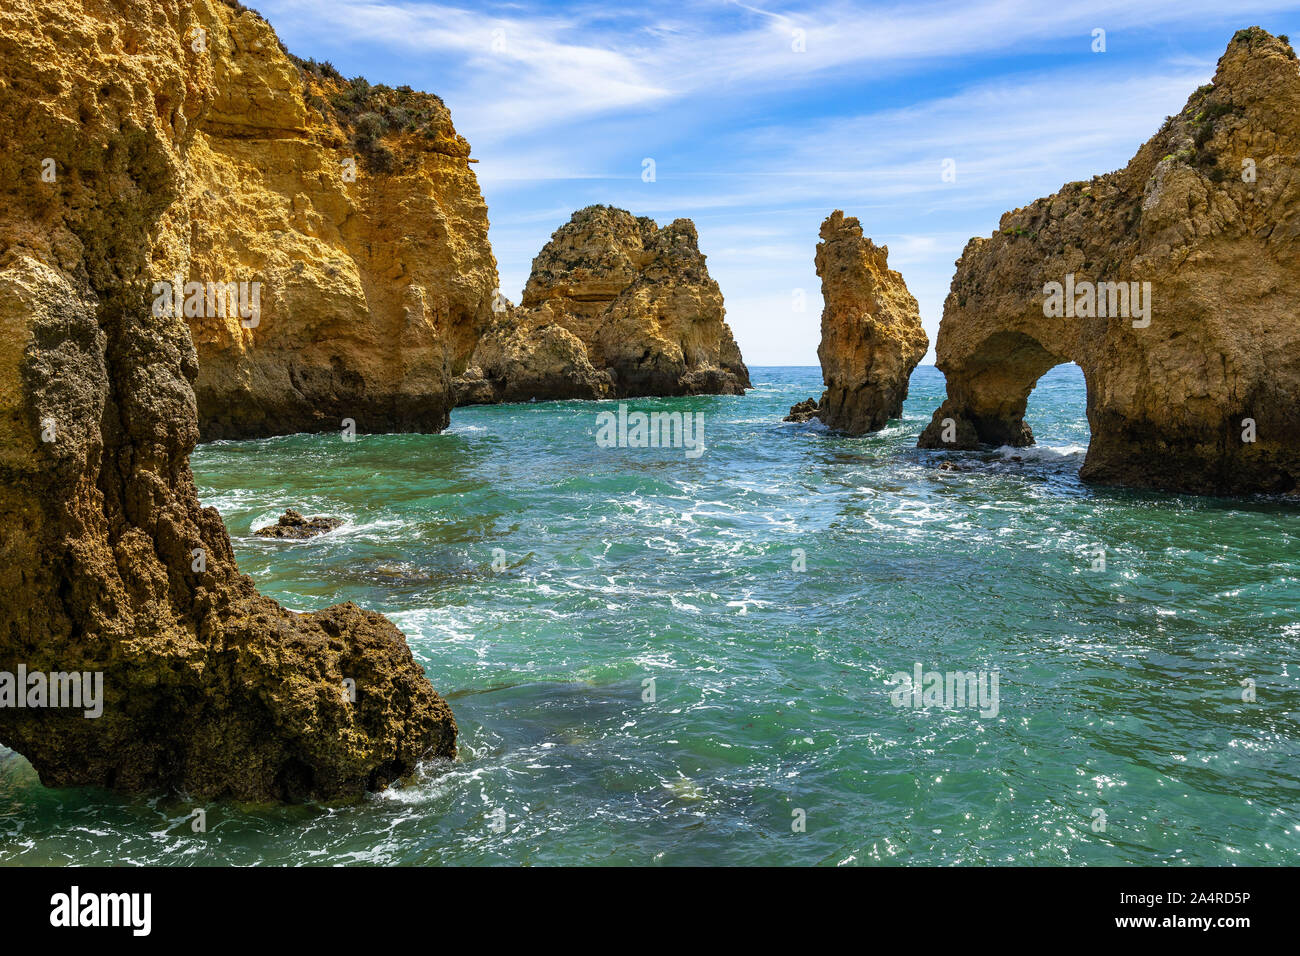 Spectaculaires formations rocheuses et les falaises à Ponta da Piedade, l'un des plus emblématiques de l'Algarve, Portugal Banque D'Images